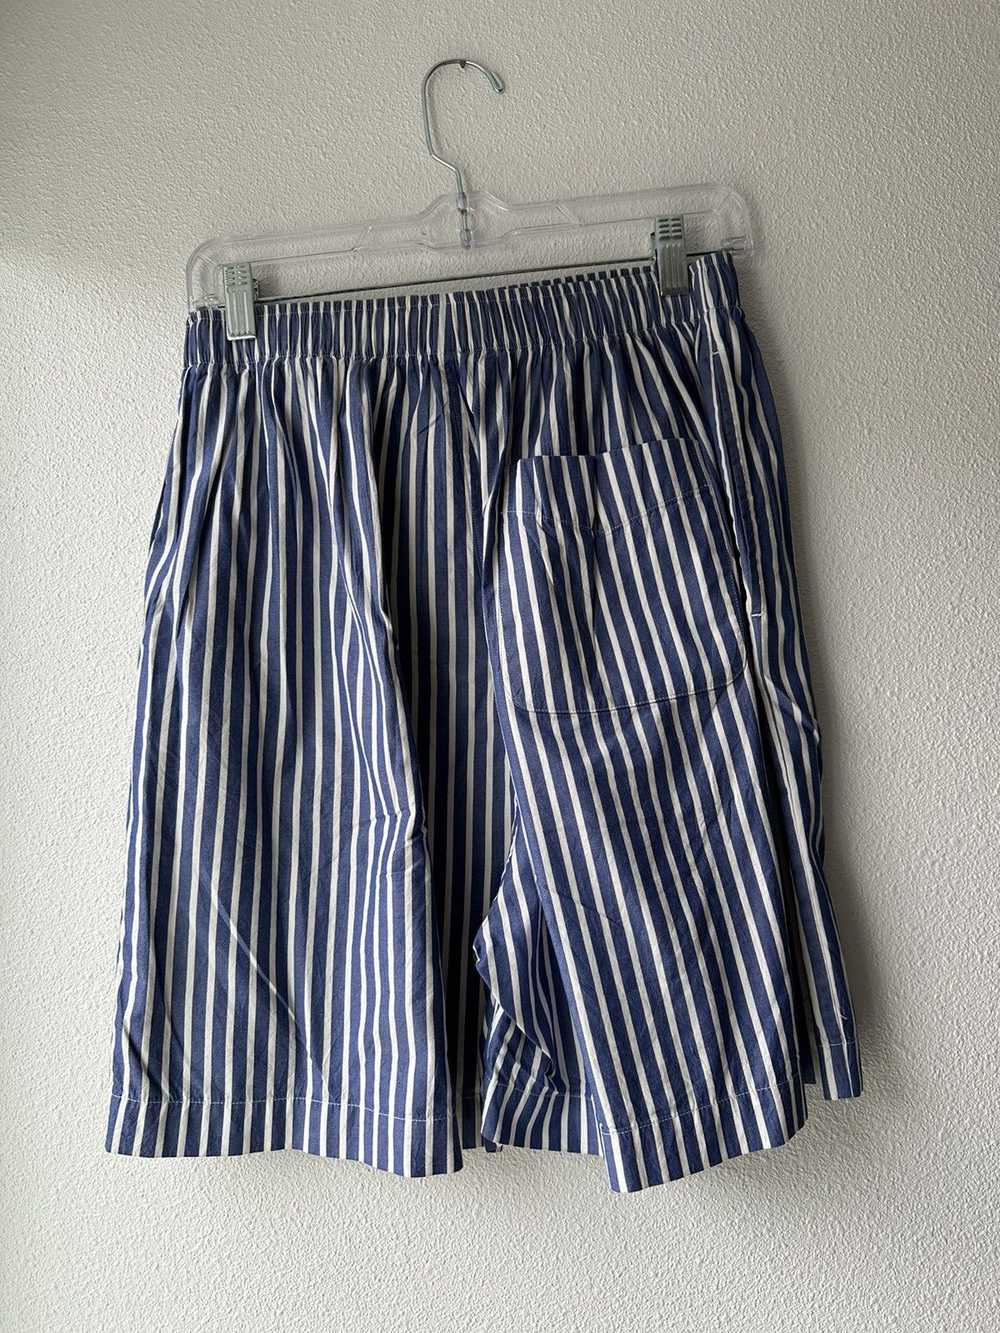 Balenciaga Balenciaga boxer/ pajama shorts - image 3